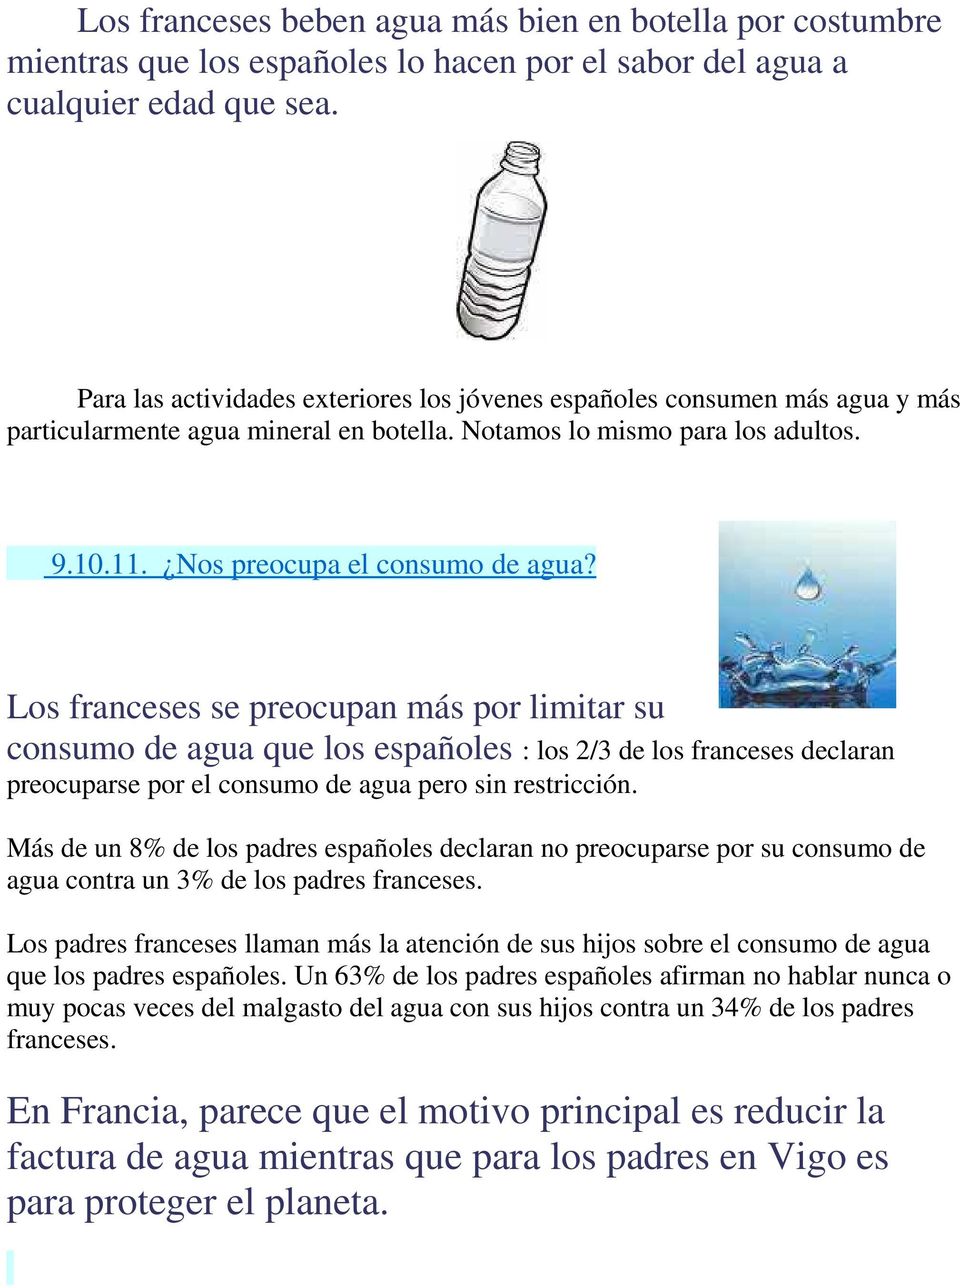 Los franceses se preocupan más por limitar su consumo de agua que los españoles : los 2/3 de los franceses declaran preocuparse por el consumo de agua pero sin restricción.